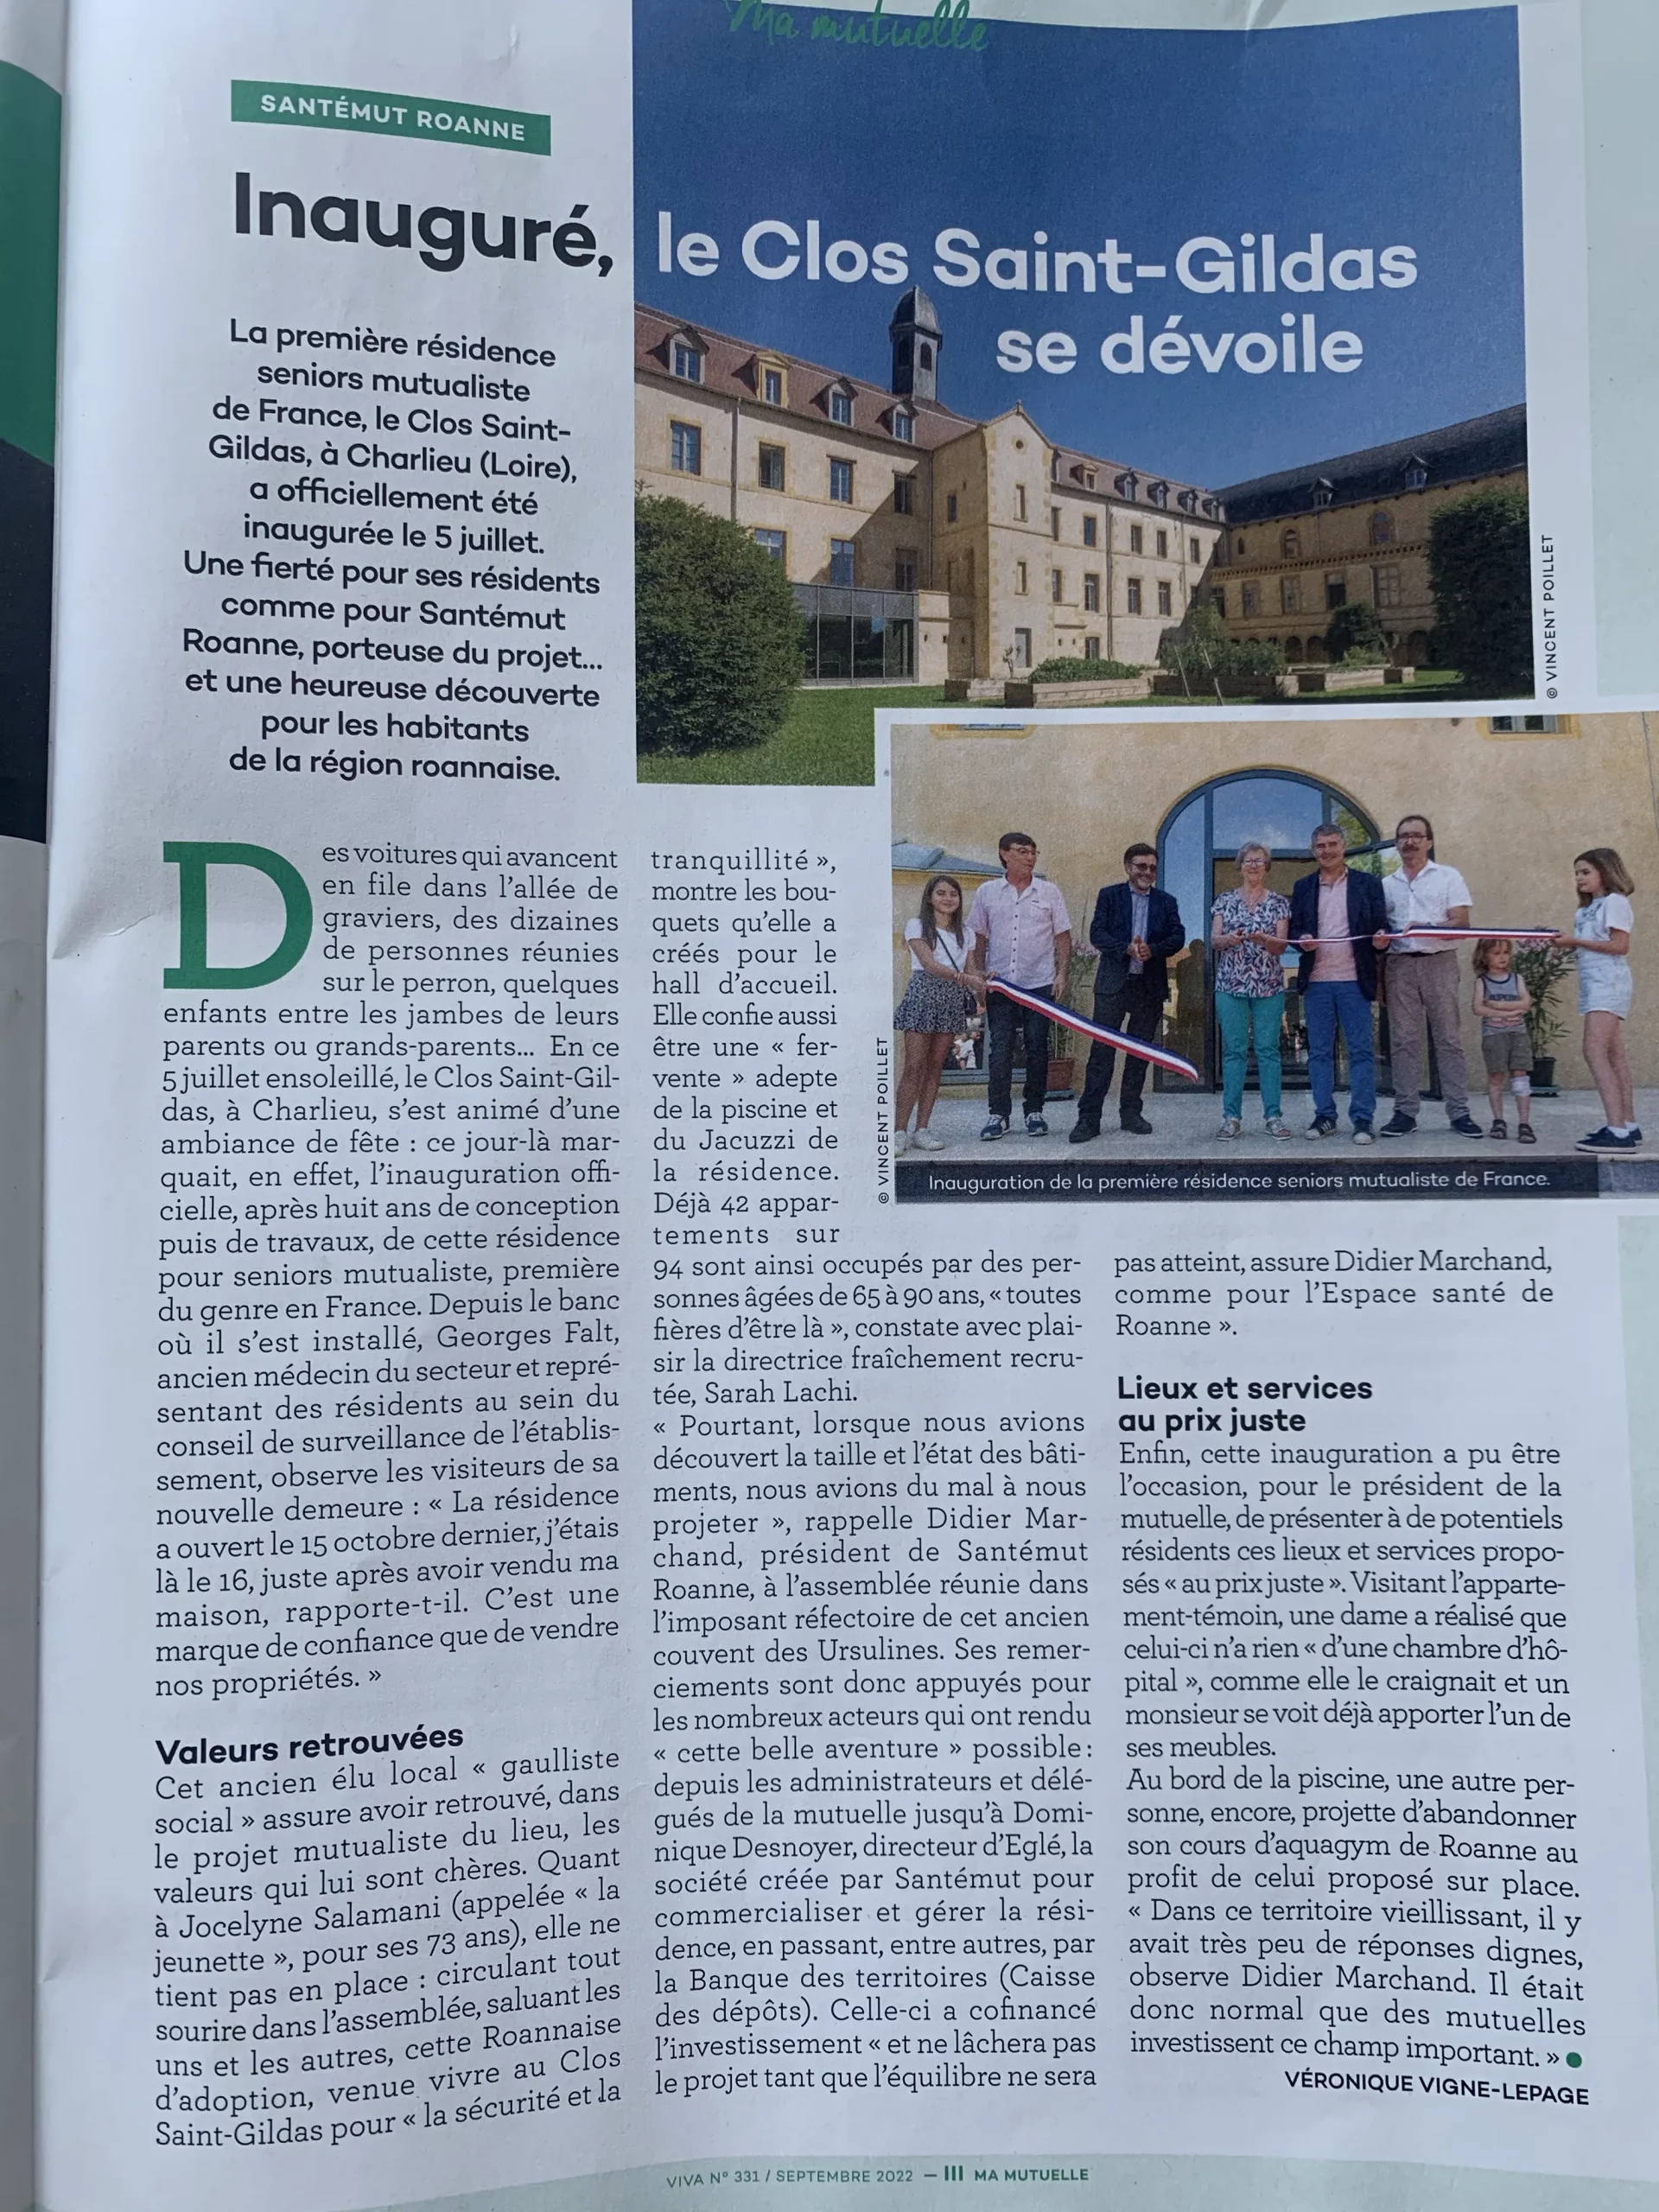 Photo de l'article paru dans le magazine Viva au sujet de l'inauguration du Clos St Gildas